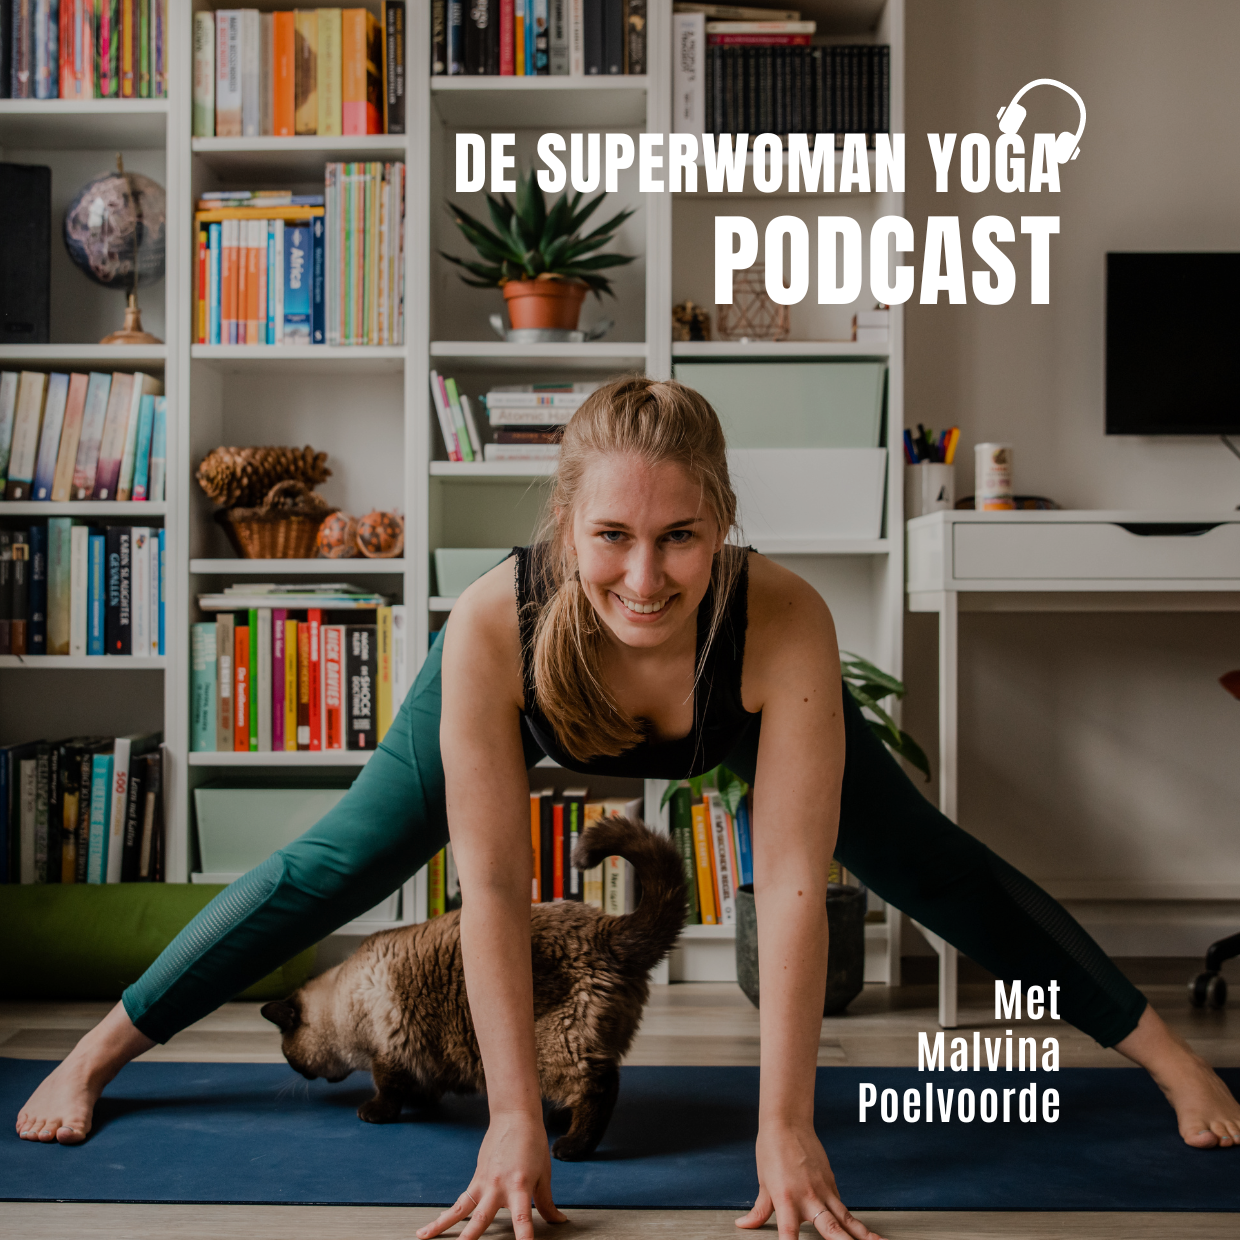 De superwoman yoga podcast